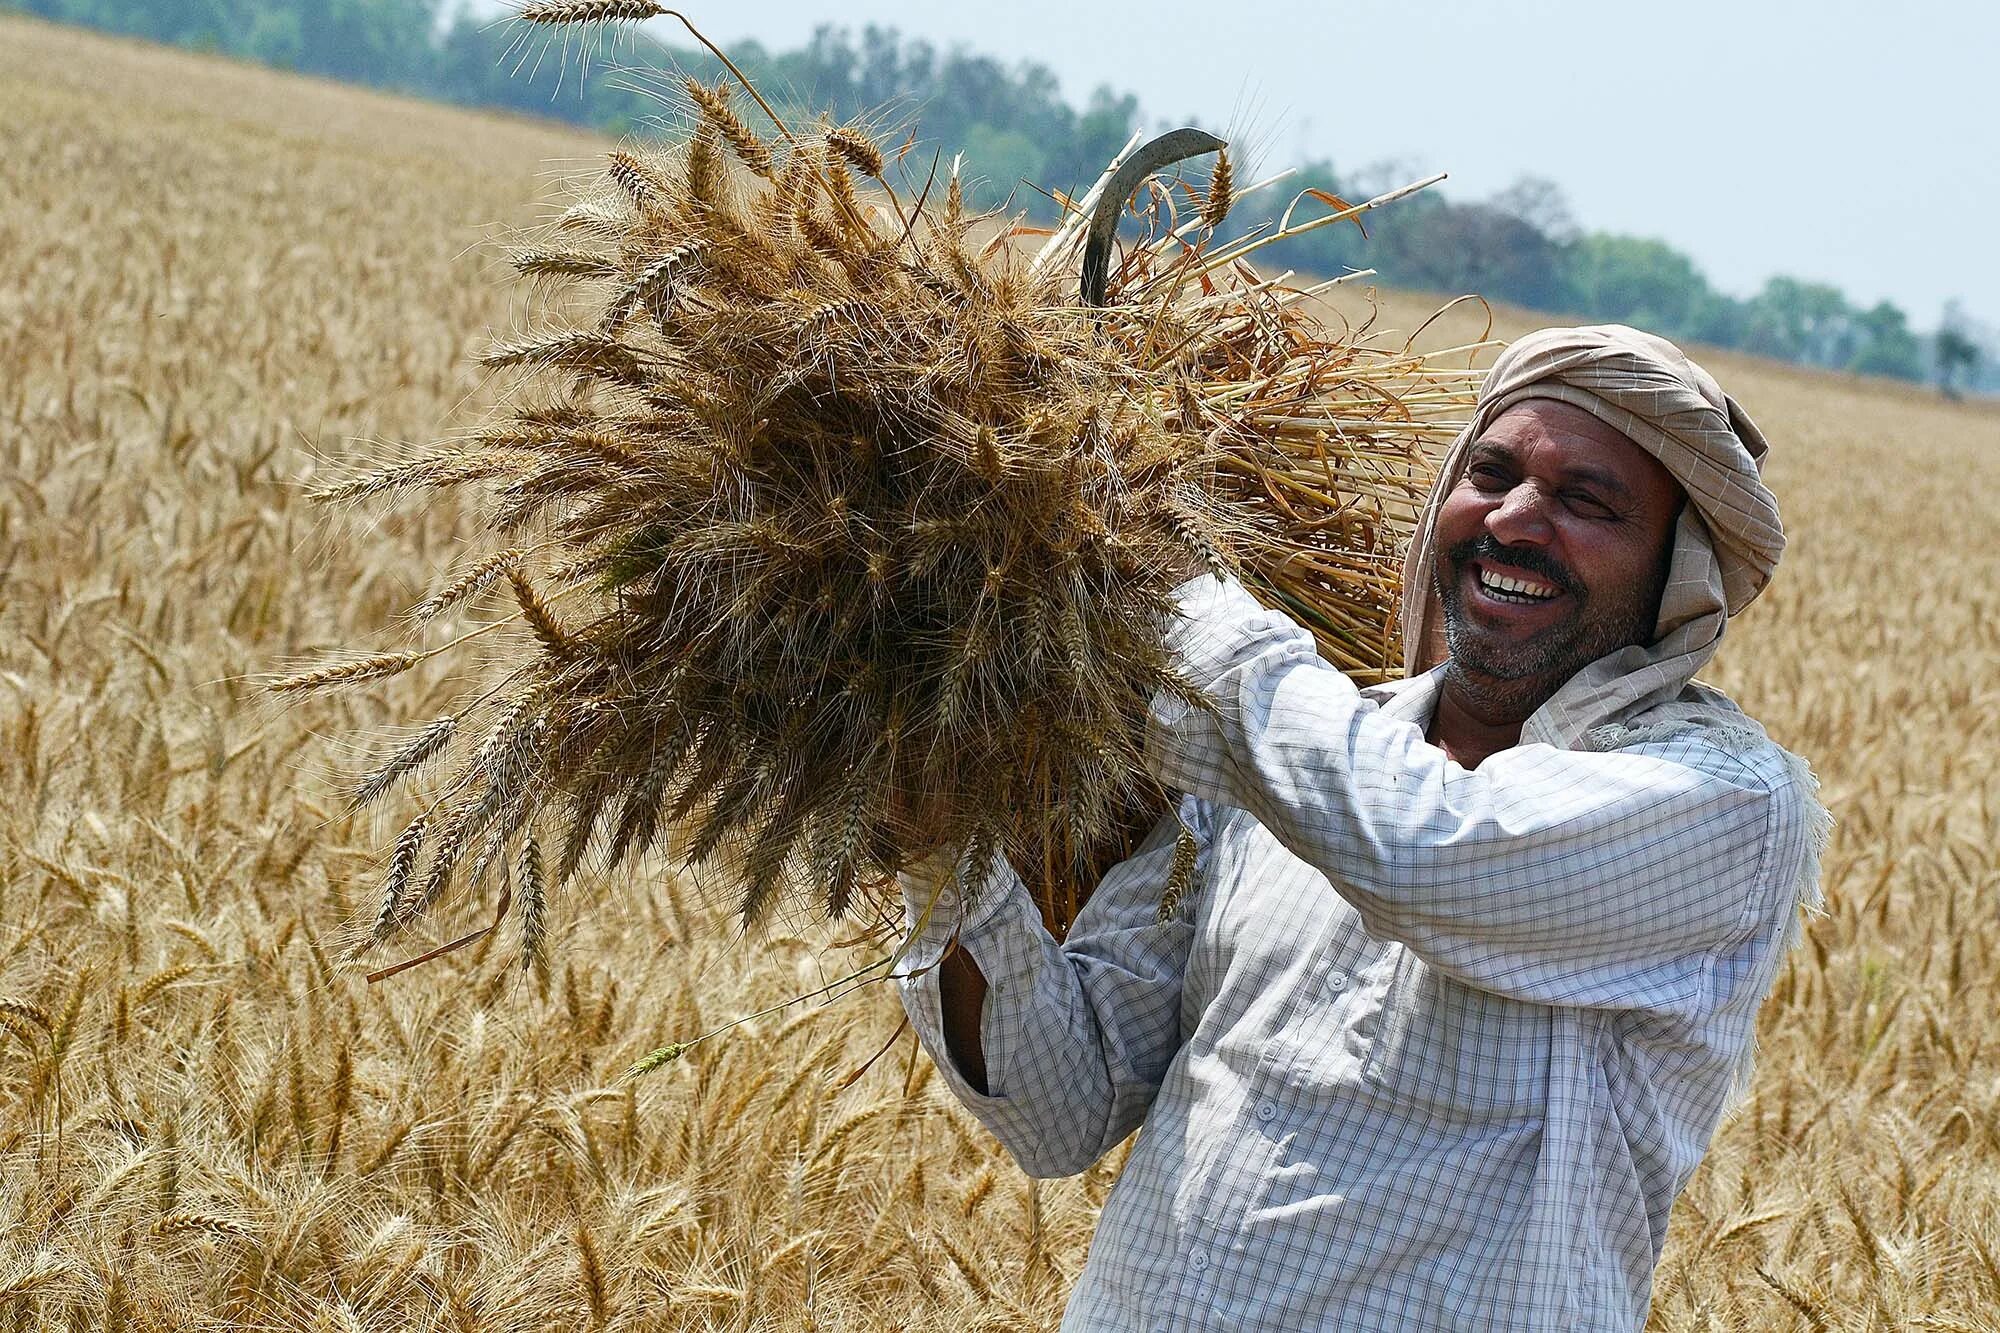 Урожай пшеницы. Фермер пшеница. Индия пшеница. Уборка пшеницы в Индии. In northern india they harvest their wheat